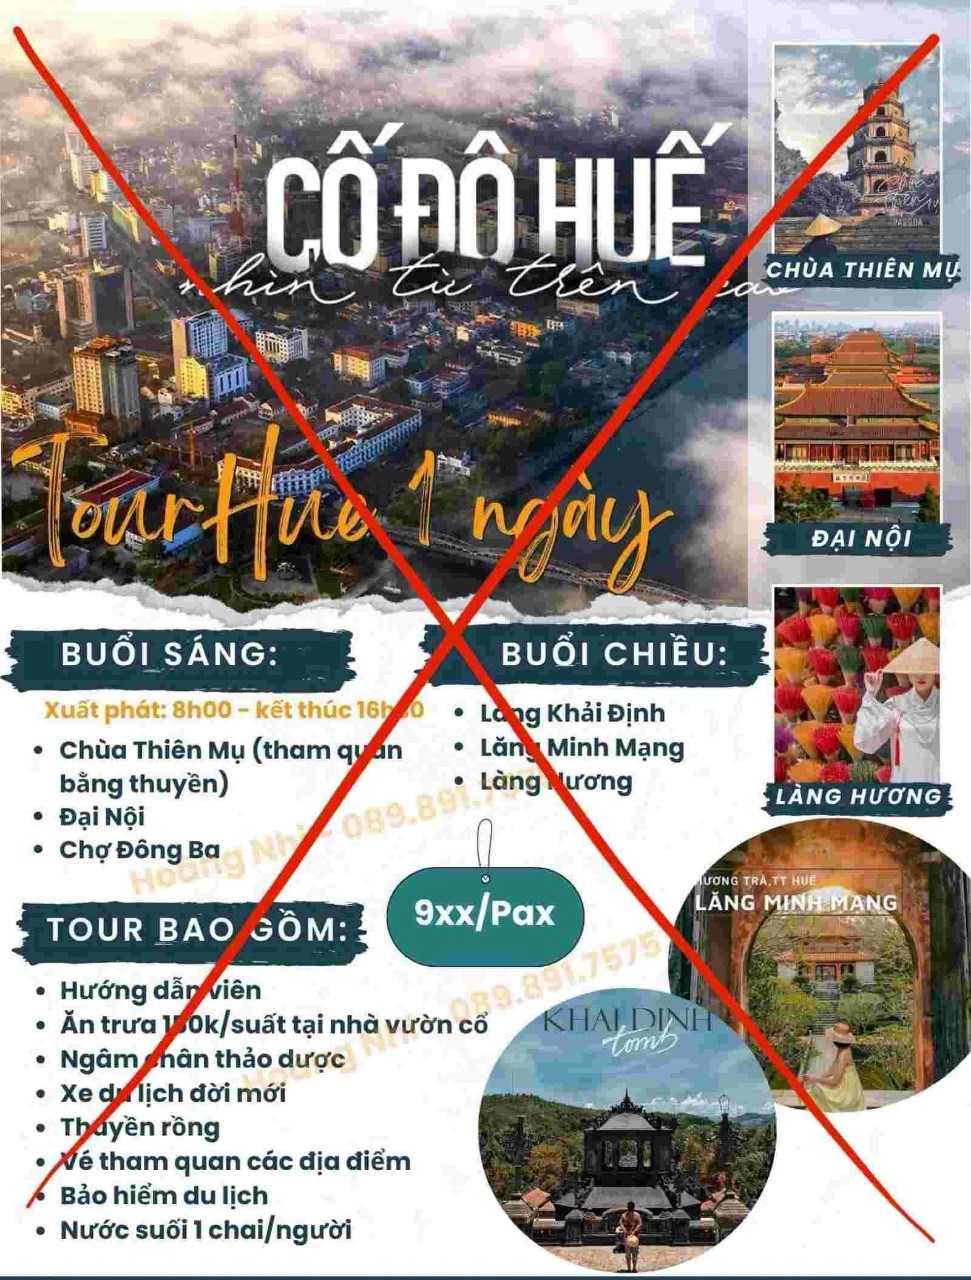 Làm rõ việc quảng bá tour ở Huế có sử dụng hình ảnh Tử Cấm Thành  - ảnh 1